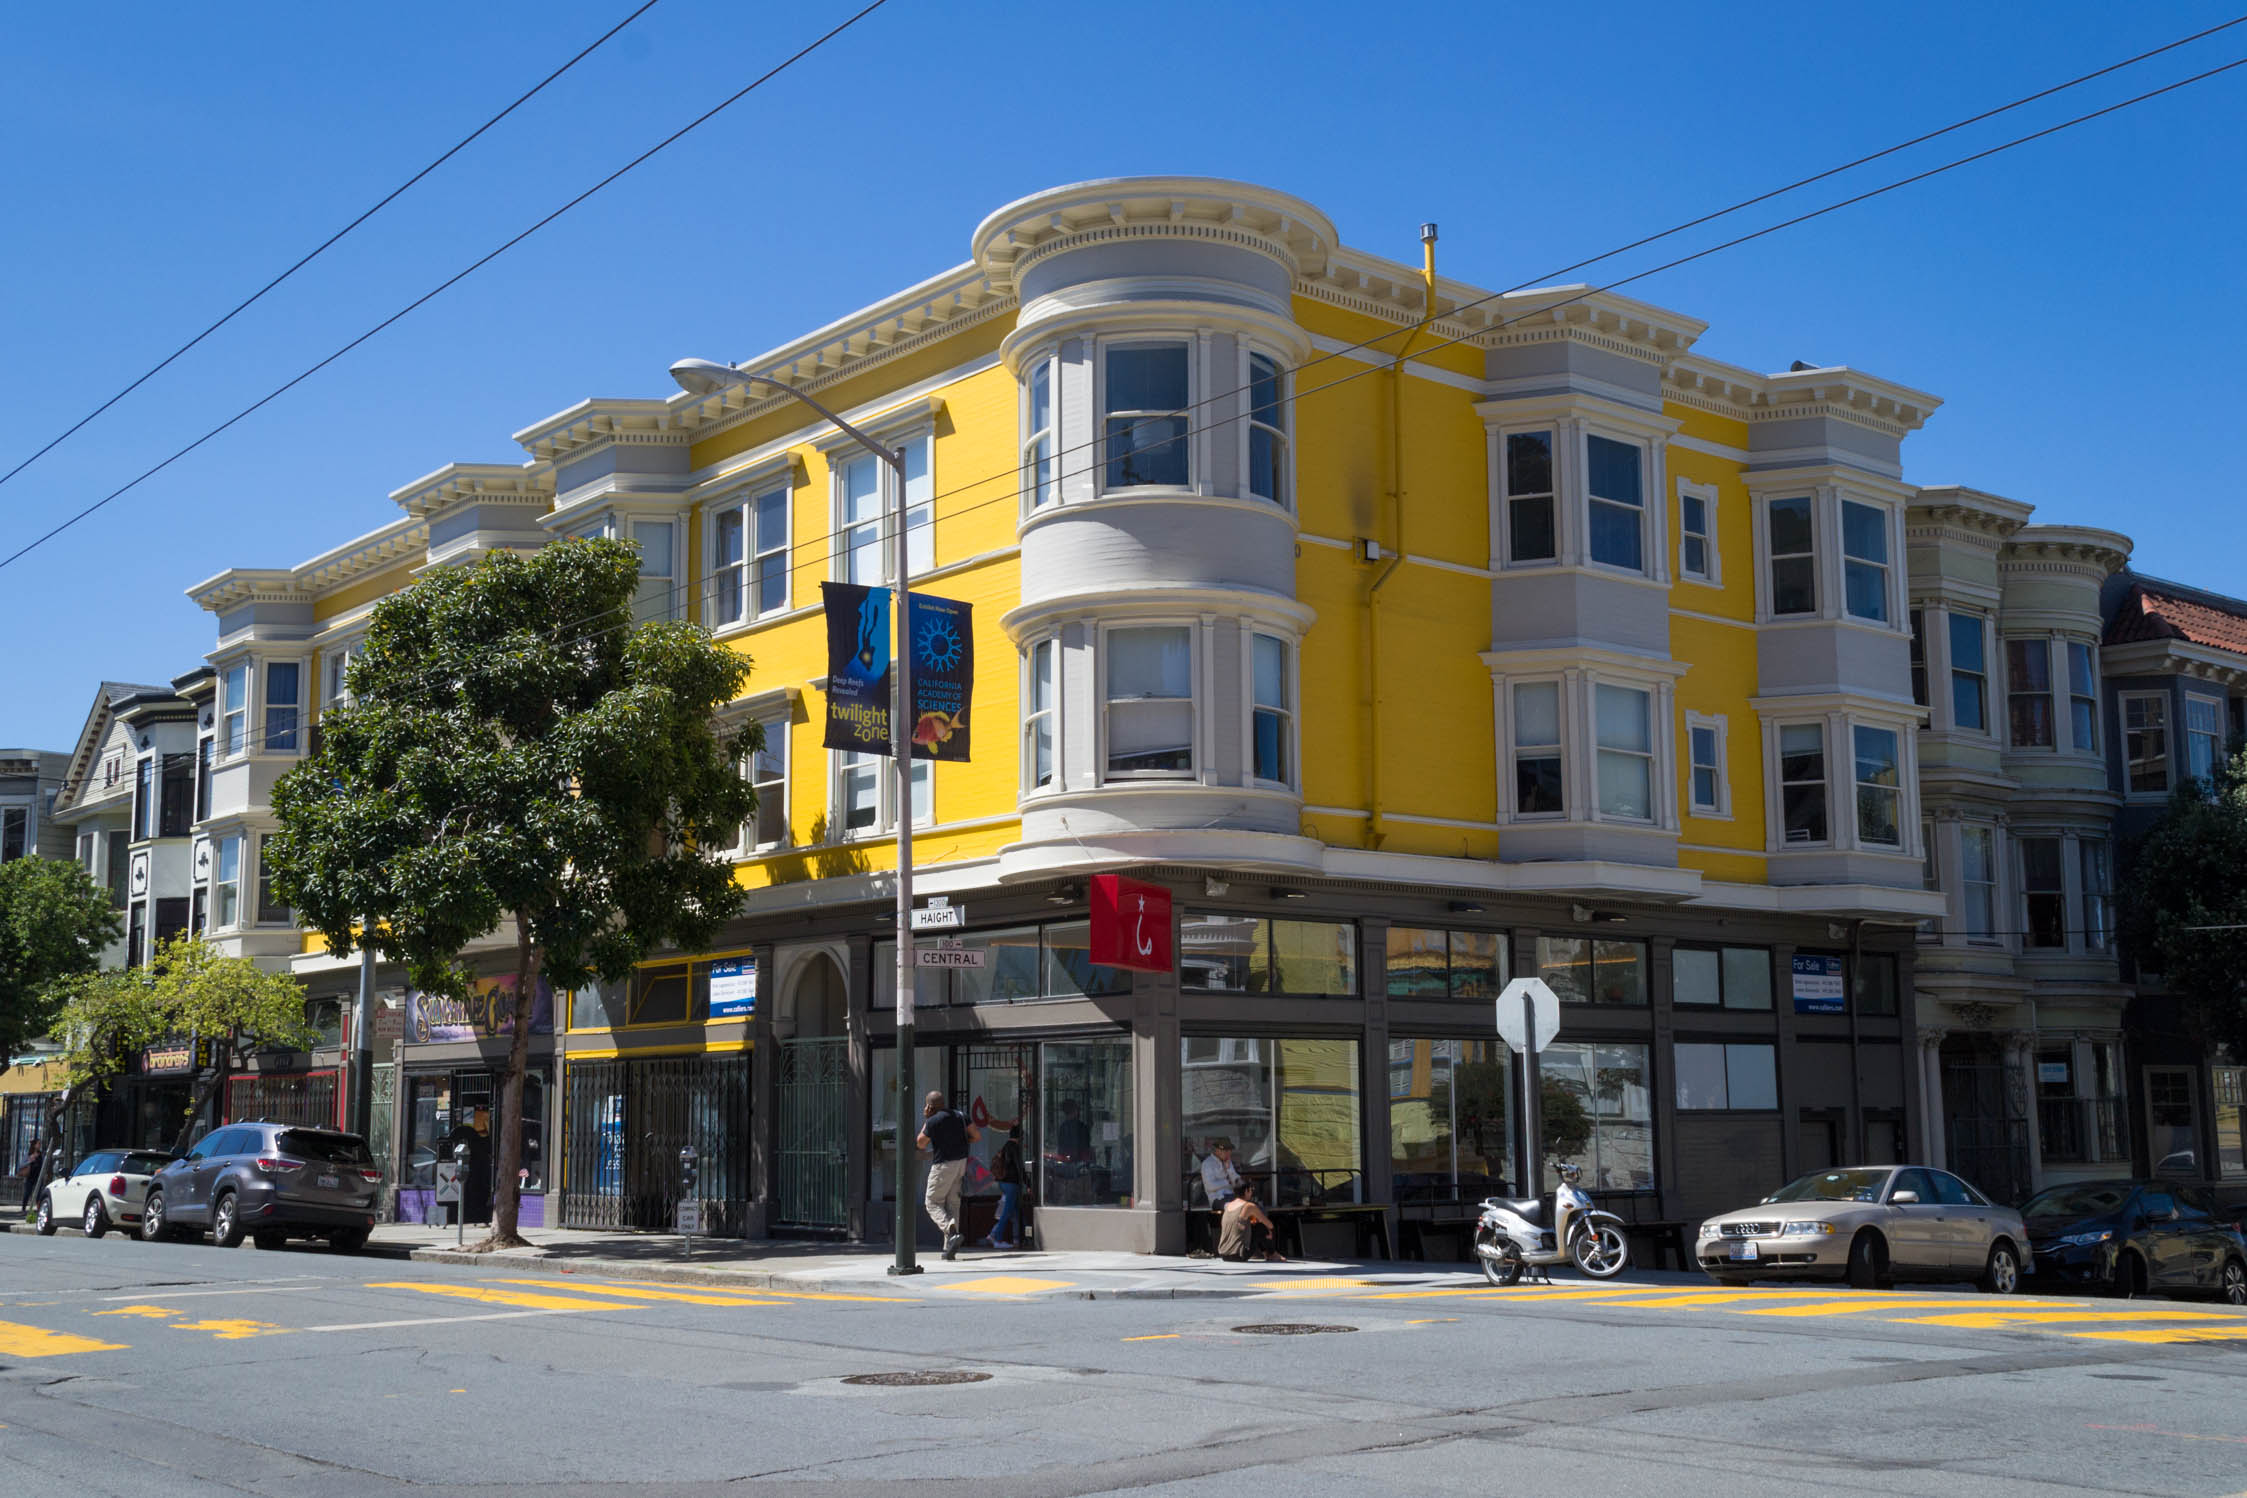 Une maison typique de San Francisco sur Haight St